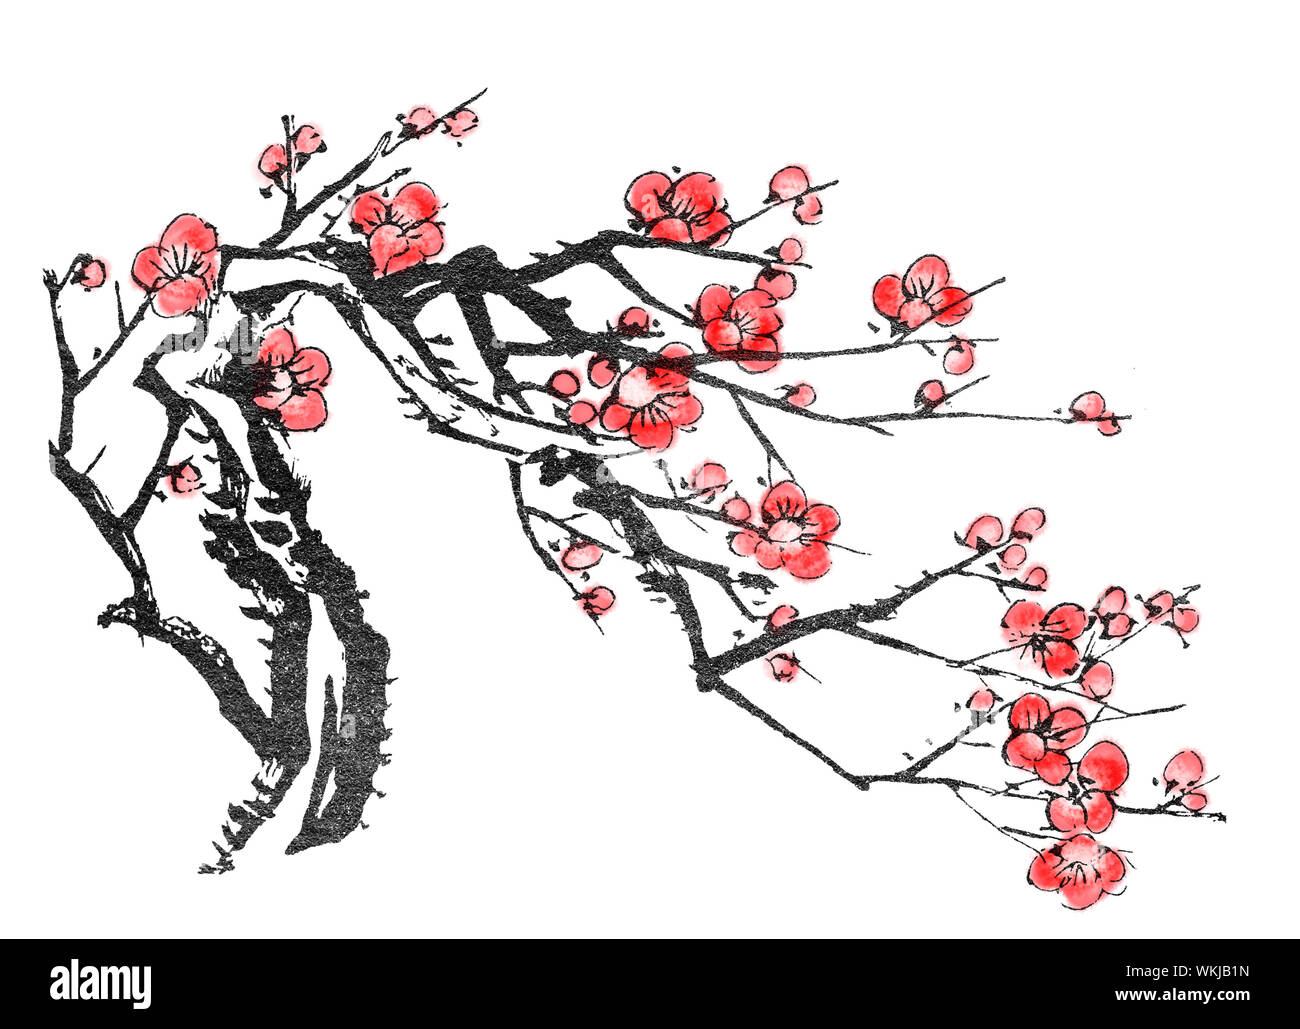 Peinture chinoise, fleurs de prunier, sur fond blanc. Banque D'Images